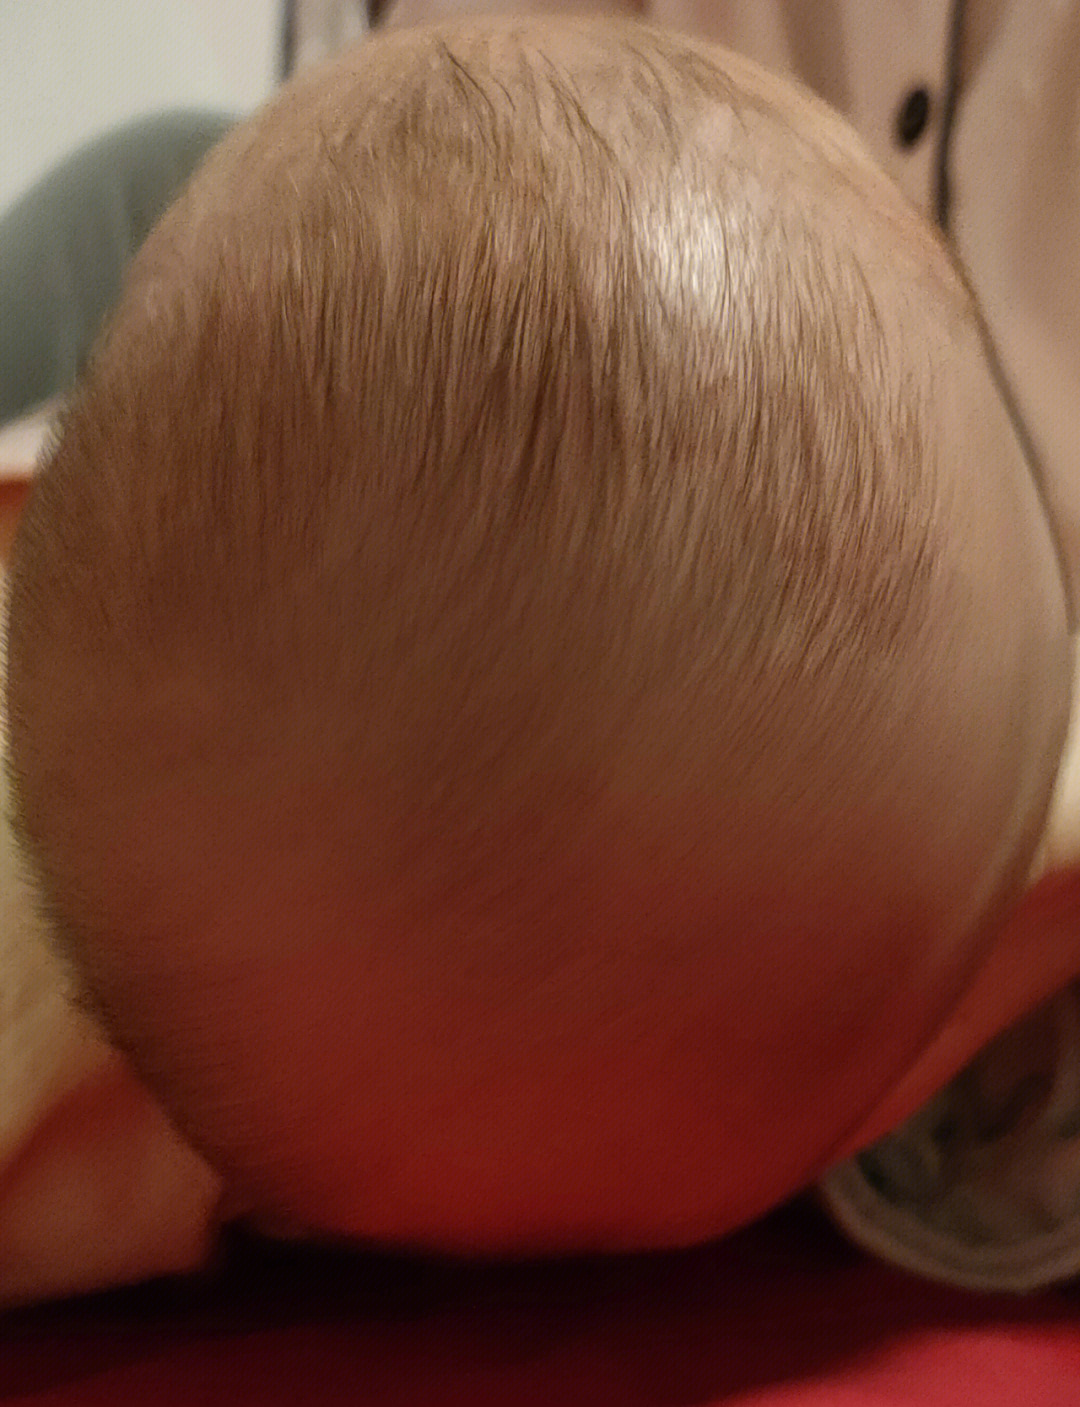 宝宝二个月6天,现在头型舟状头,两侧犄角明显,耳朵两边凹陷厉害